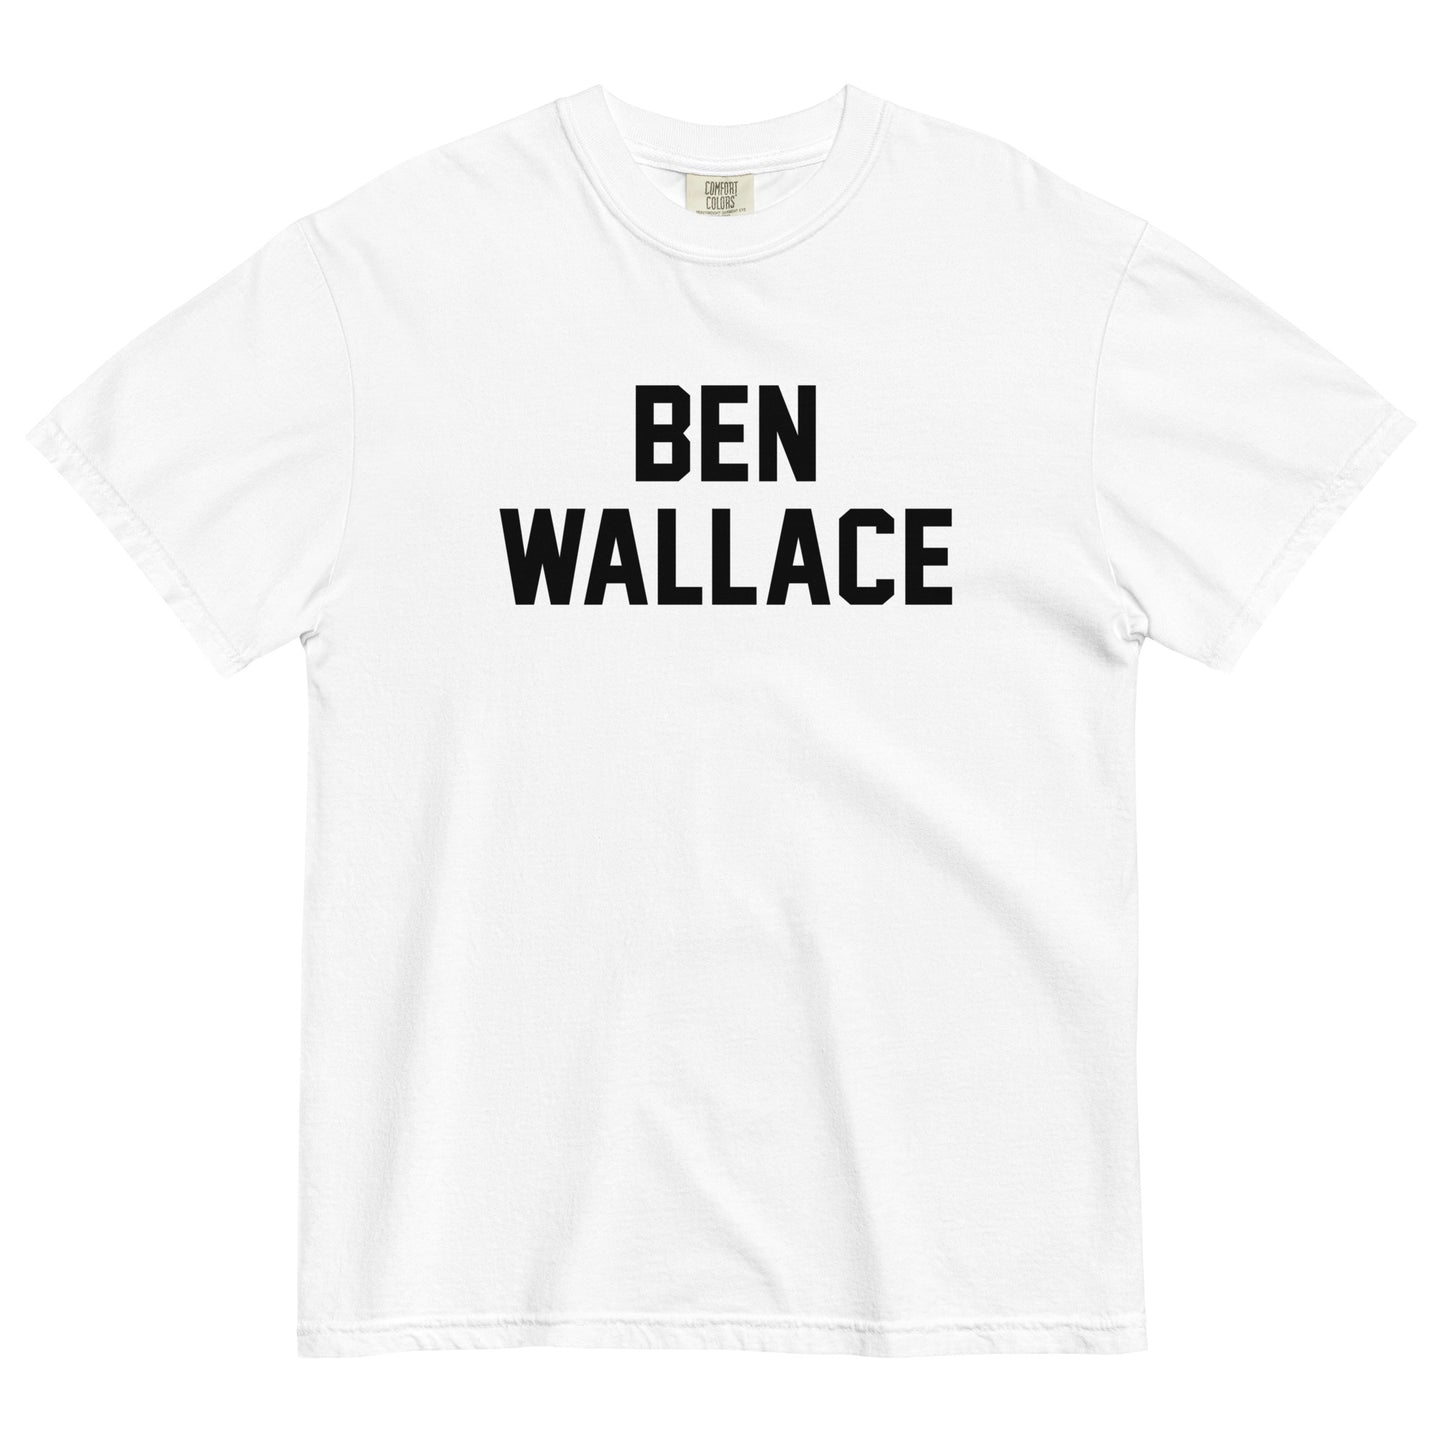 BEN WALLACE